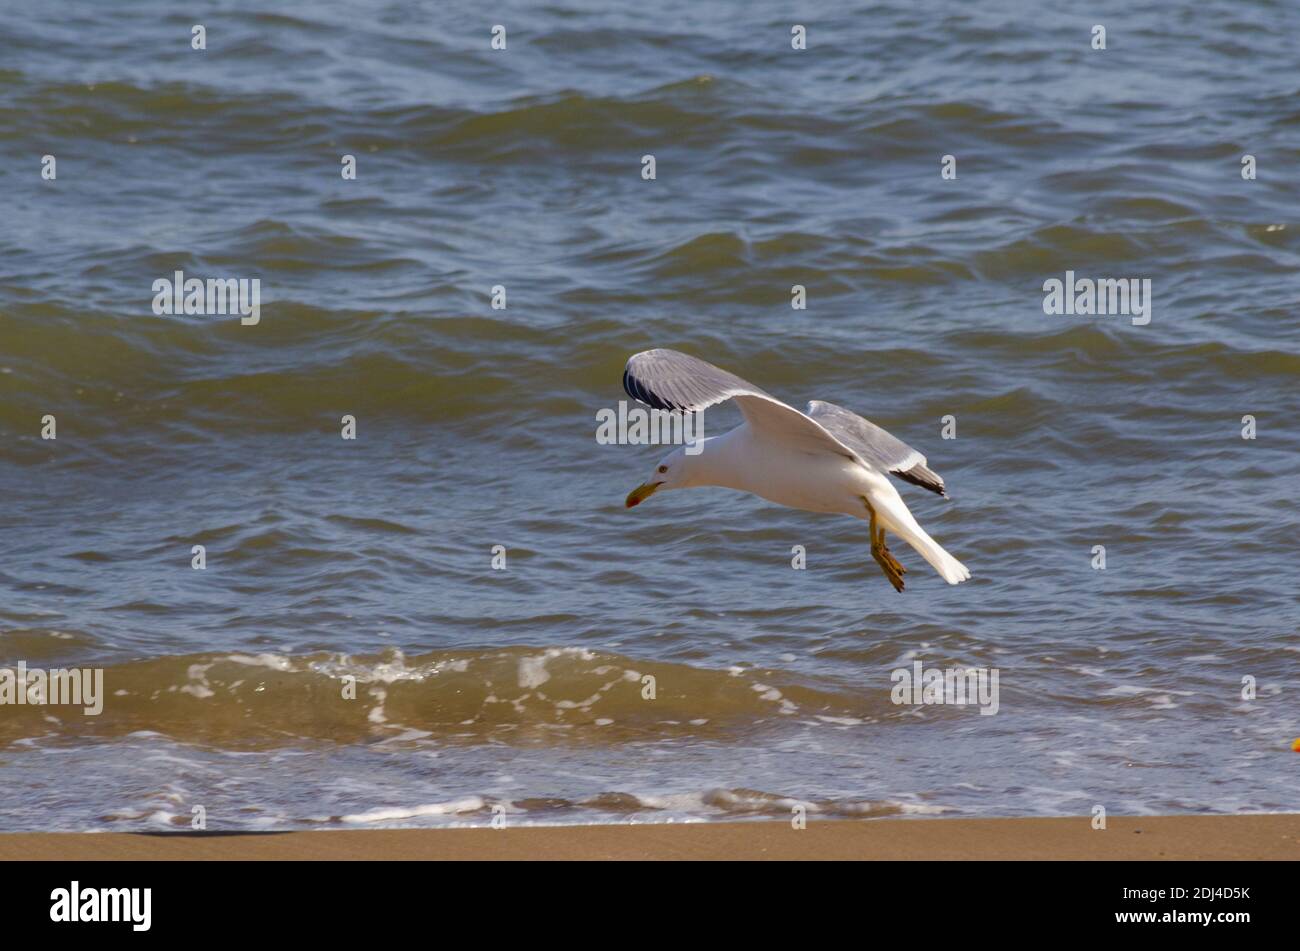 Yellow-legged gull ( Larus michahellis ) on a beach near Alexandroupoli, Evros, Greece - Photo: Geopix Stock Photo